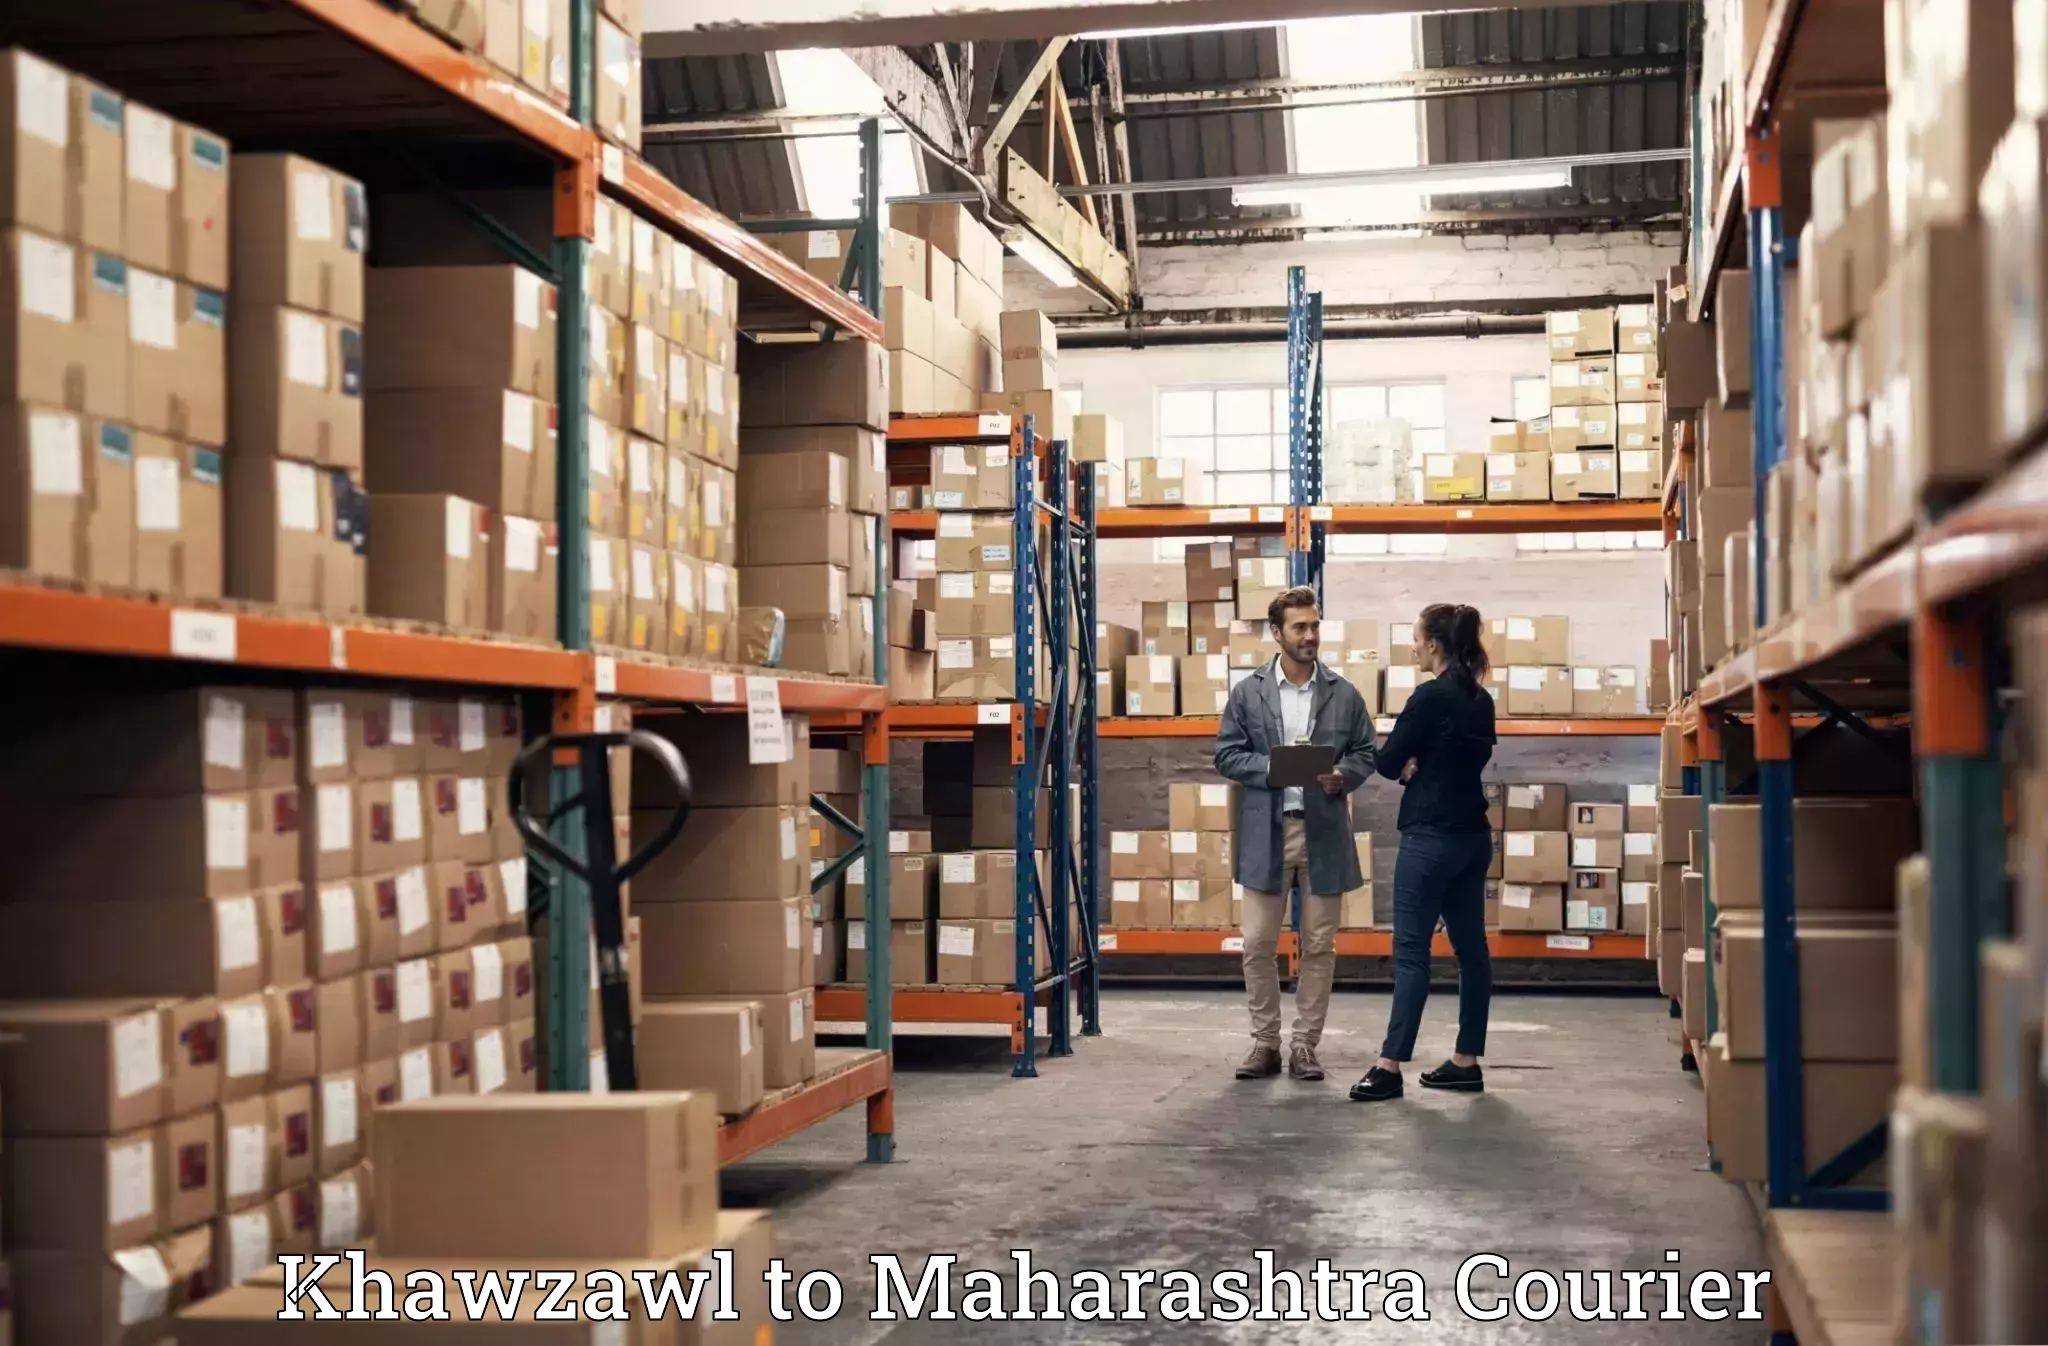 Professional moving assistance Khawzawl to Maharashtra